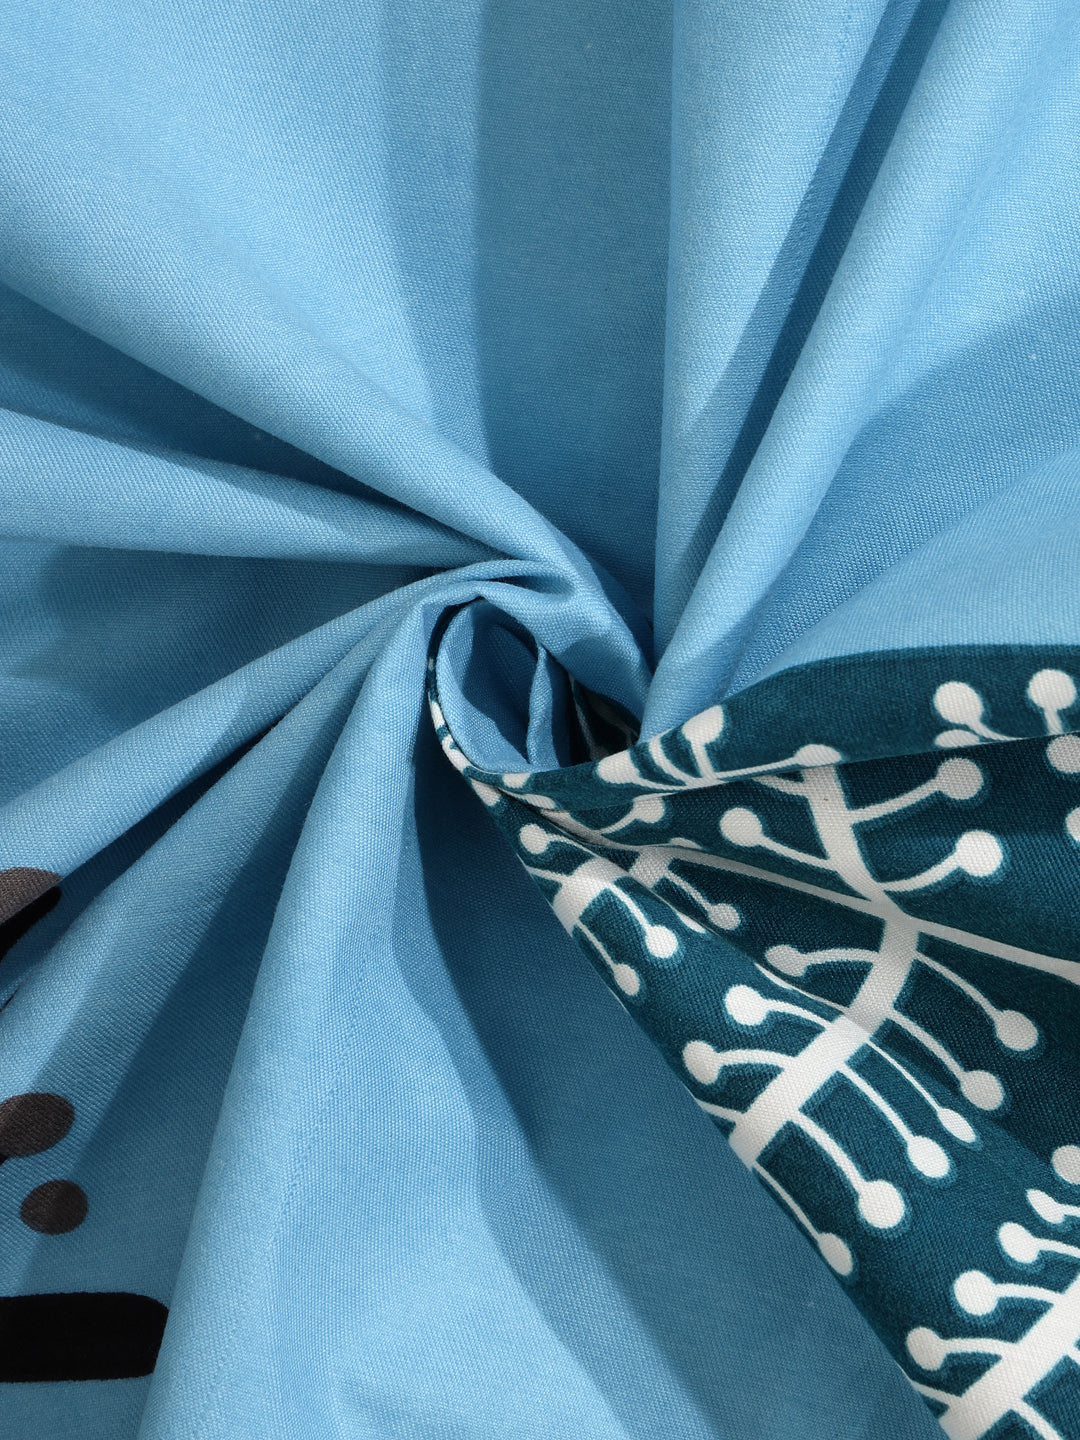 Arrabi Blue Leaf TC Cotton Blend Super King Size Bedsheet with 2 Pillow Covers (270 x 260 cm)